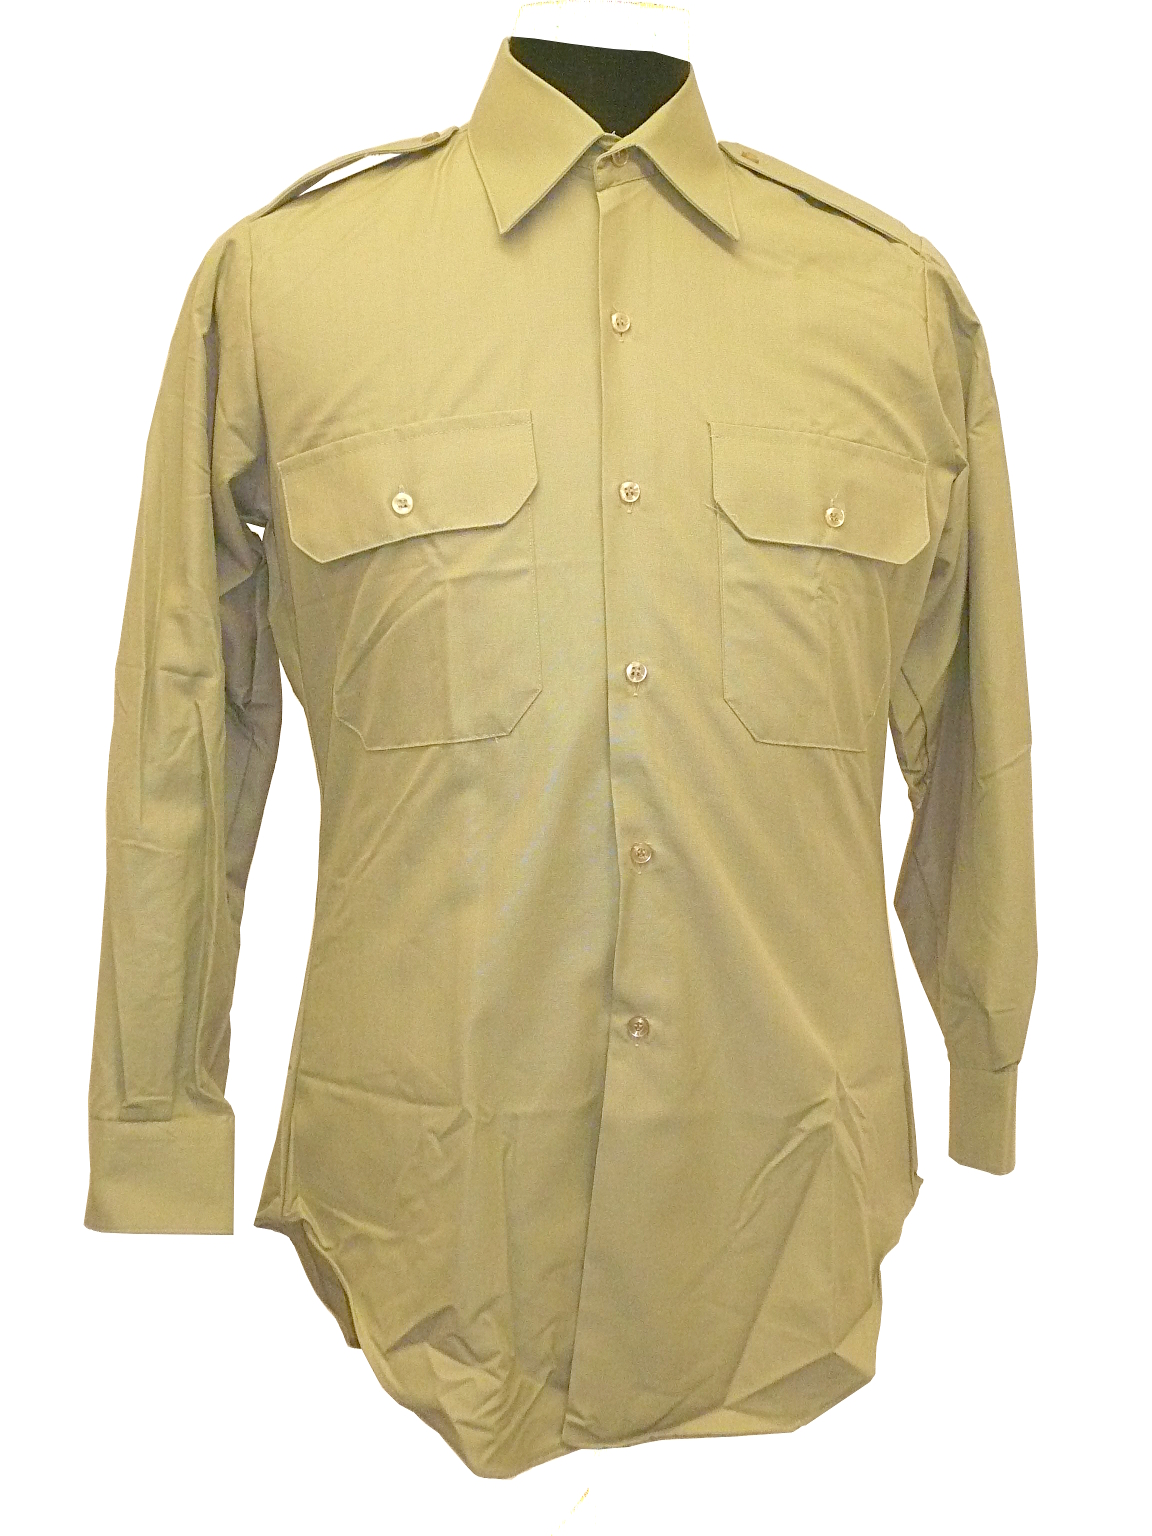 Australian Service Dress Shirt SRT06 | Comrades